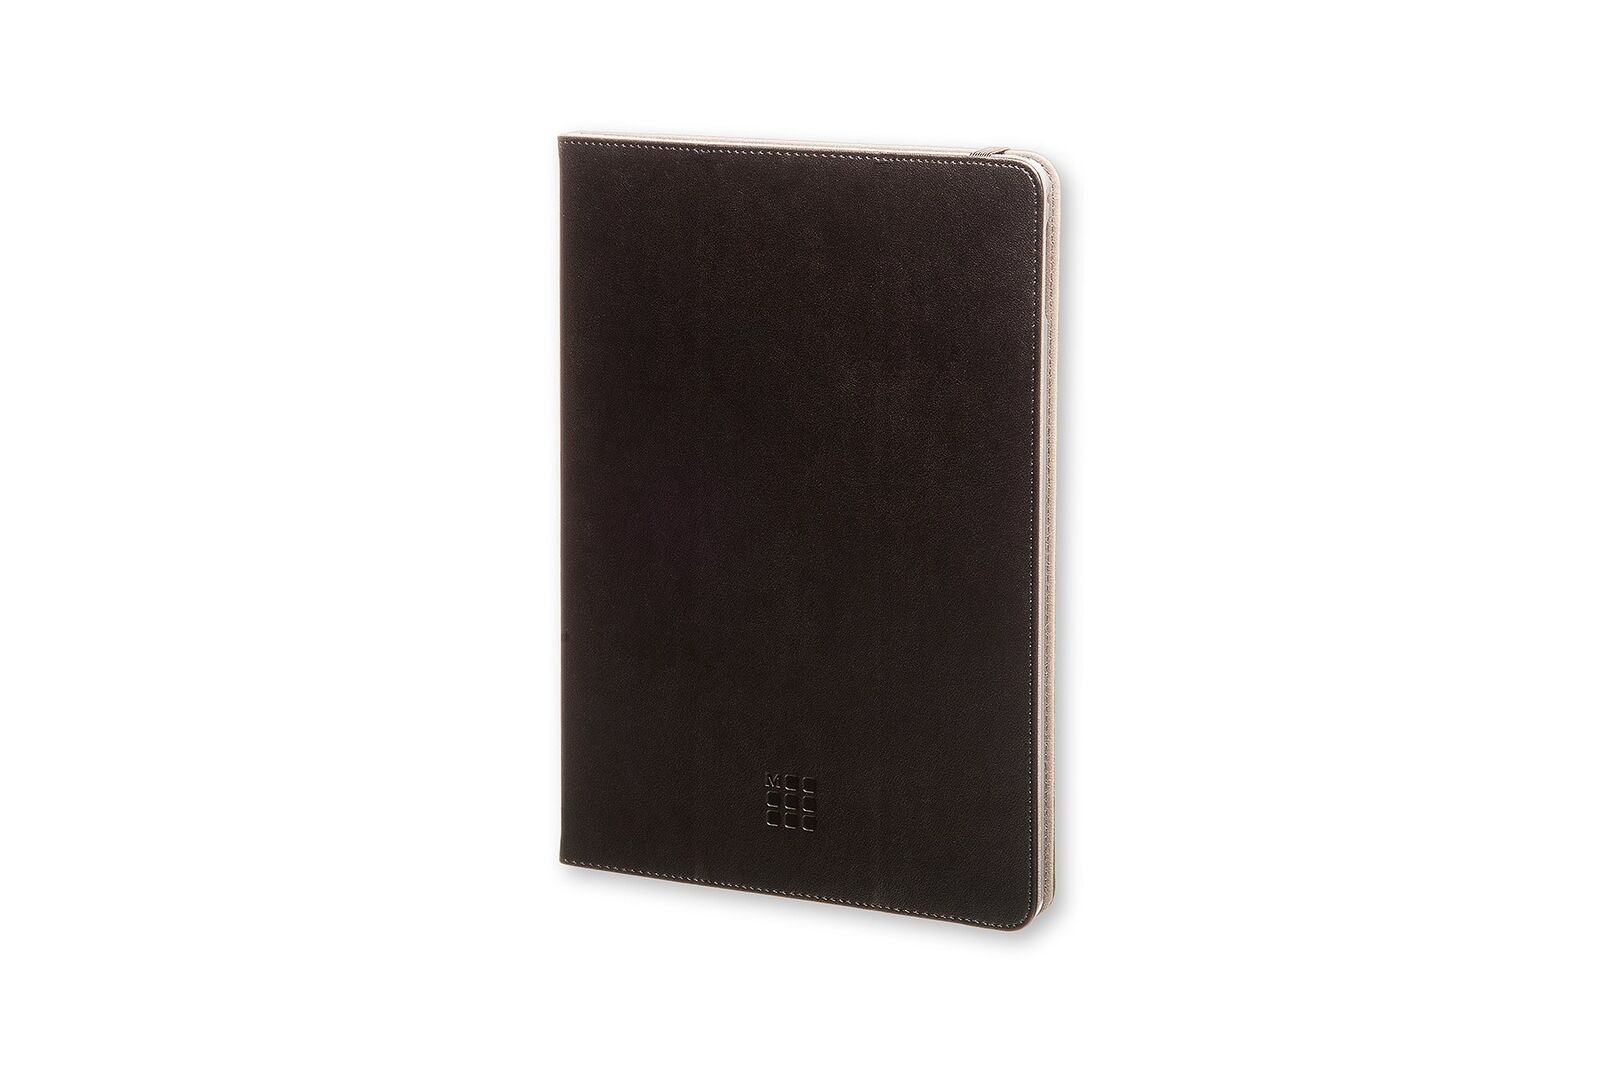 Moleskine Classic Original Black iPad Air 2 Case